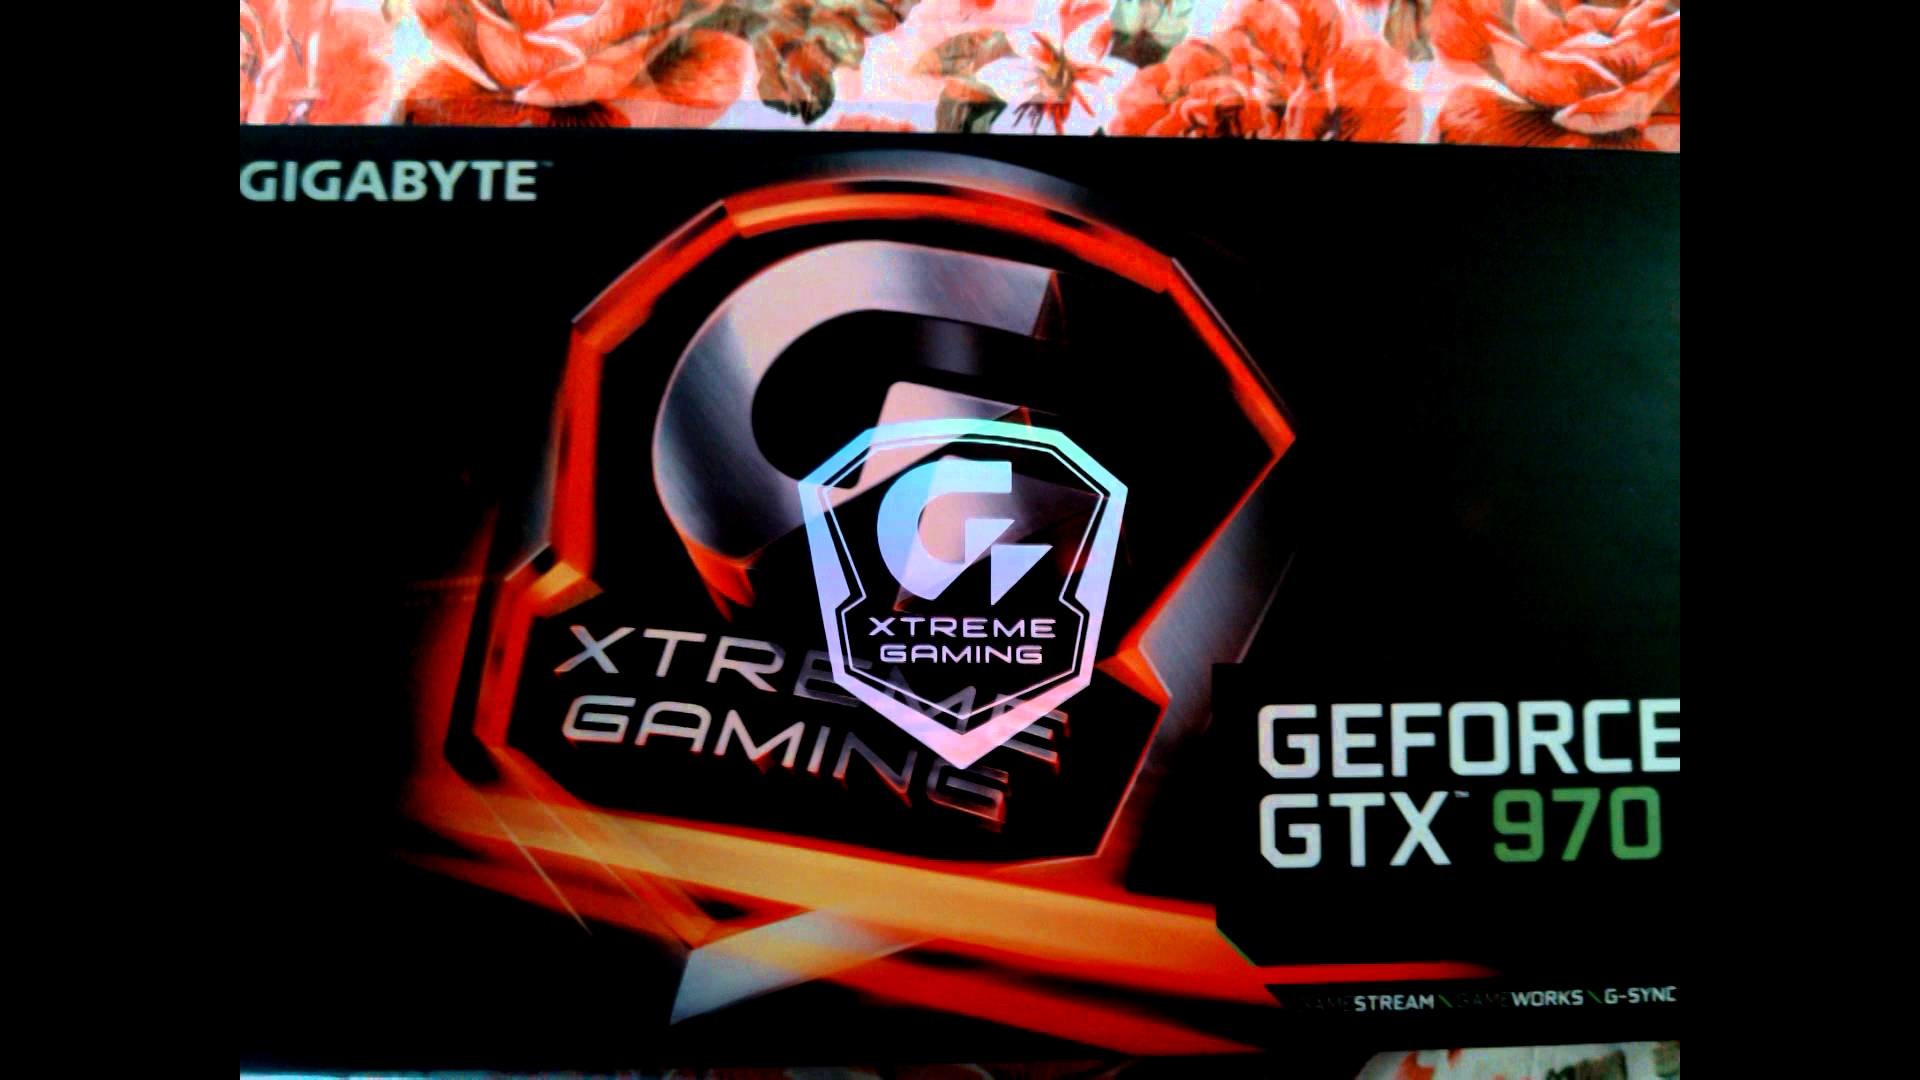 1920x1080 Gigabyte GTX 970 Xtreme Gaming